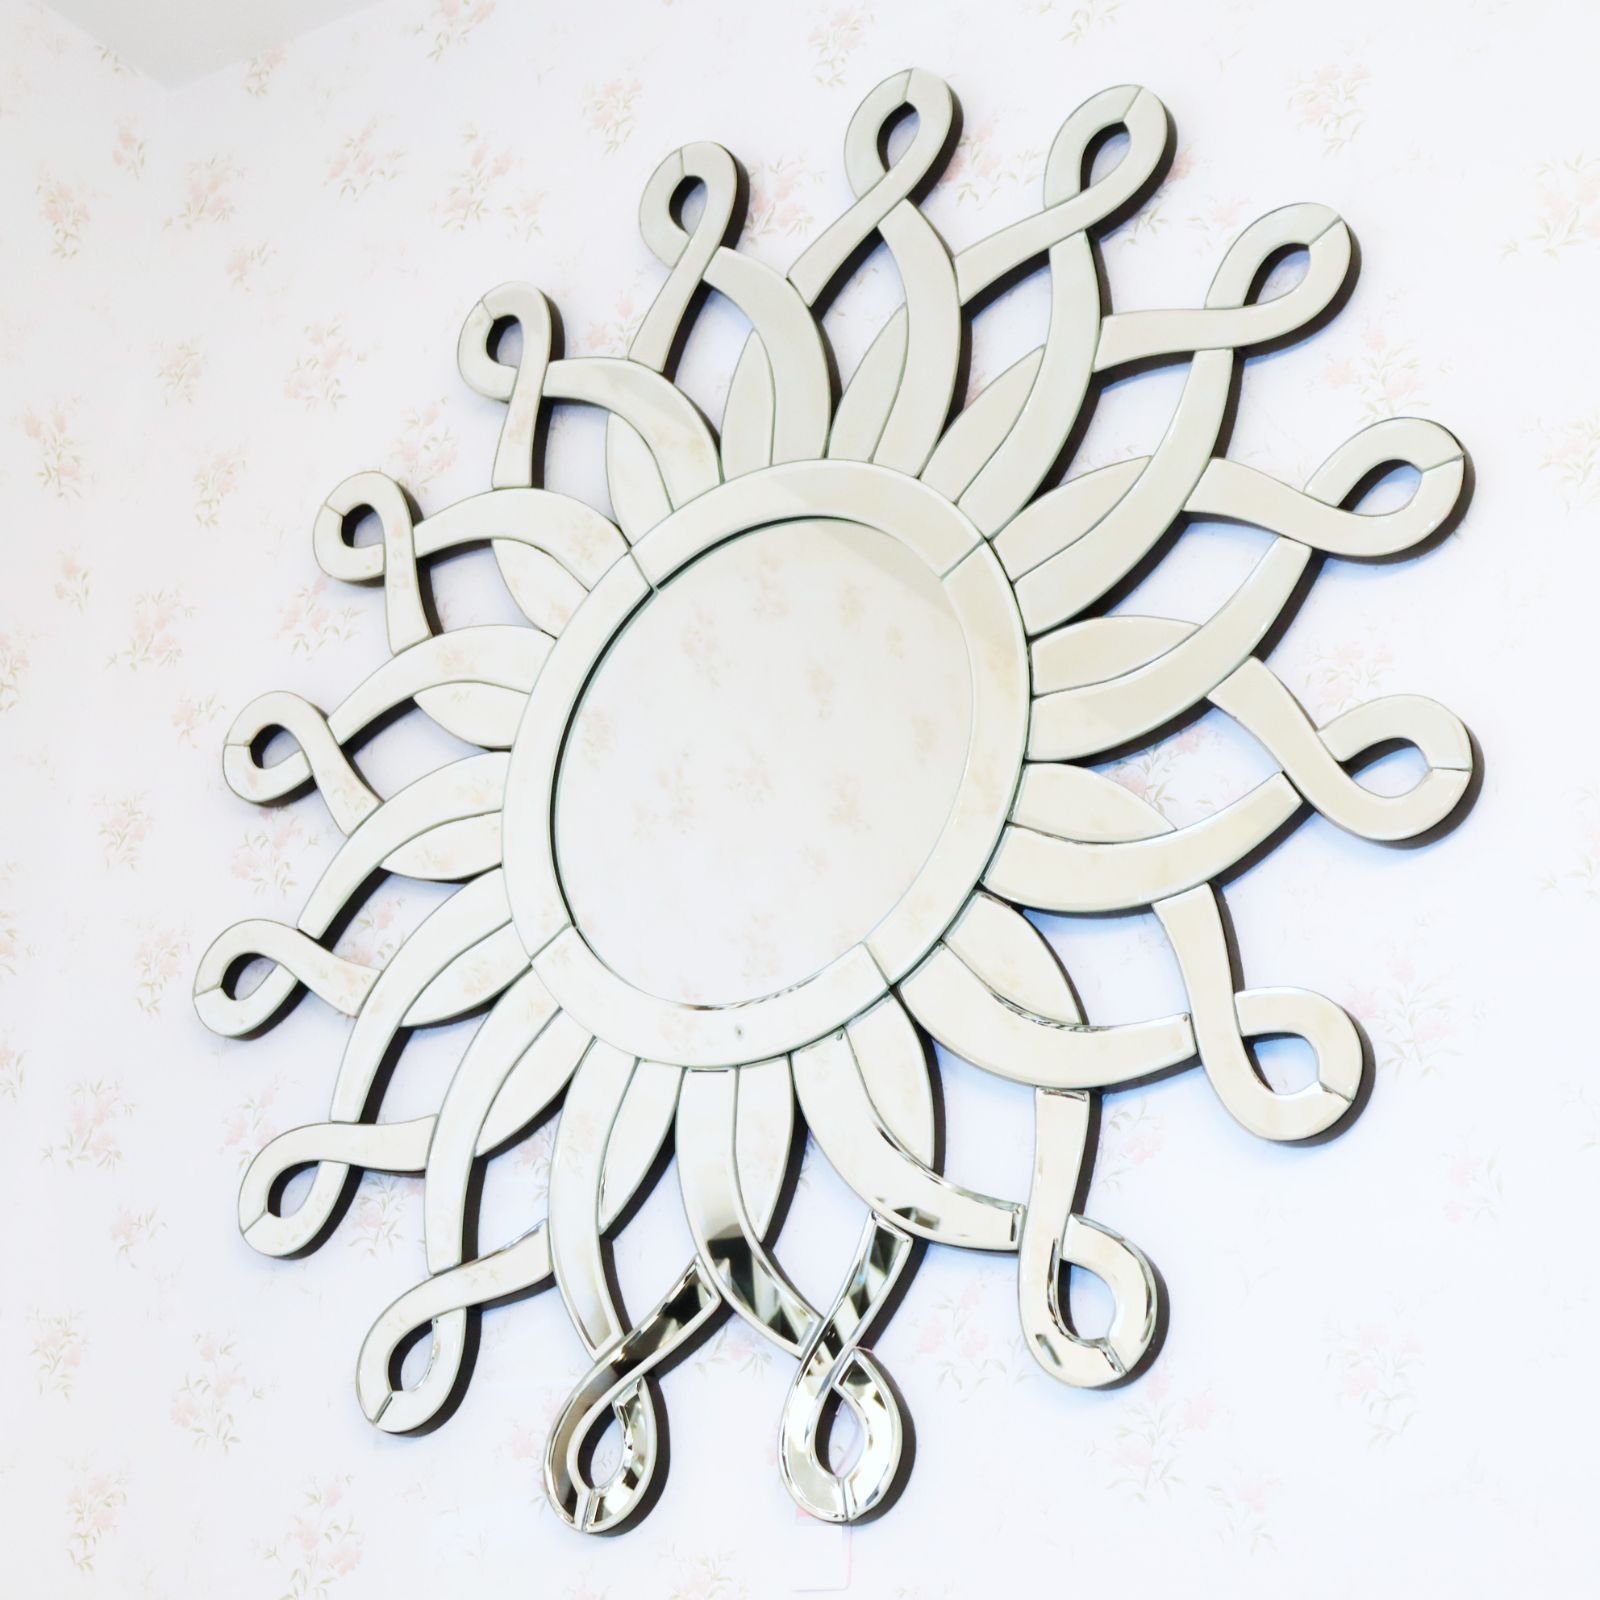 ミラー家具 壁掛けミラー 太陽 ヒマワリ 鏡 グラムスタイル